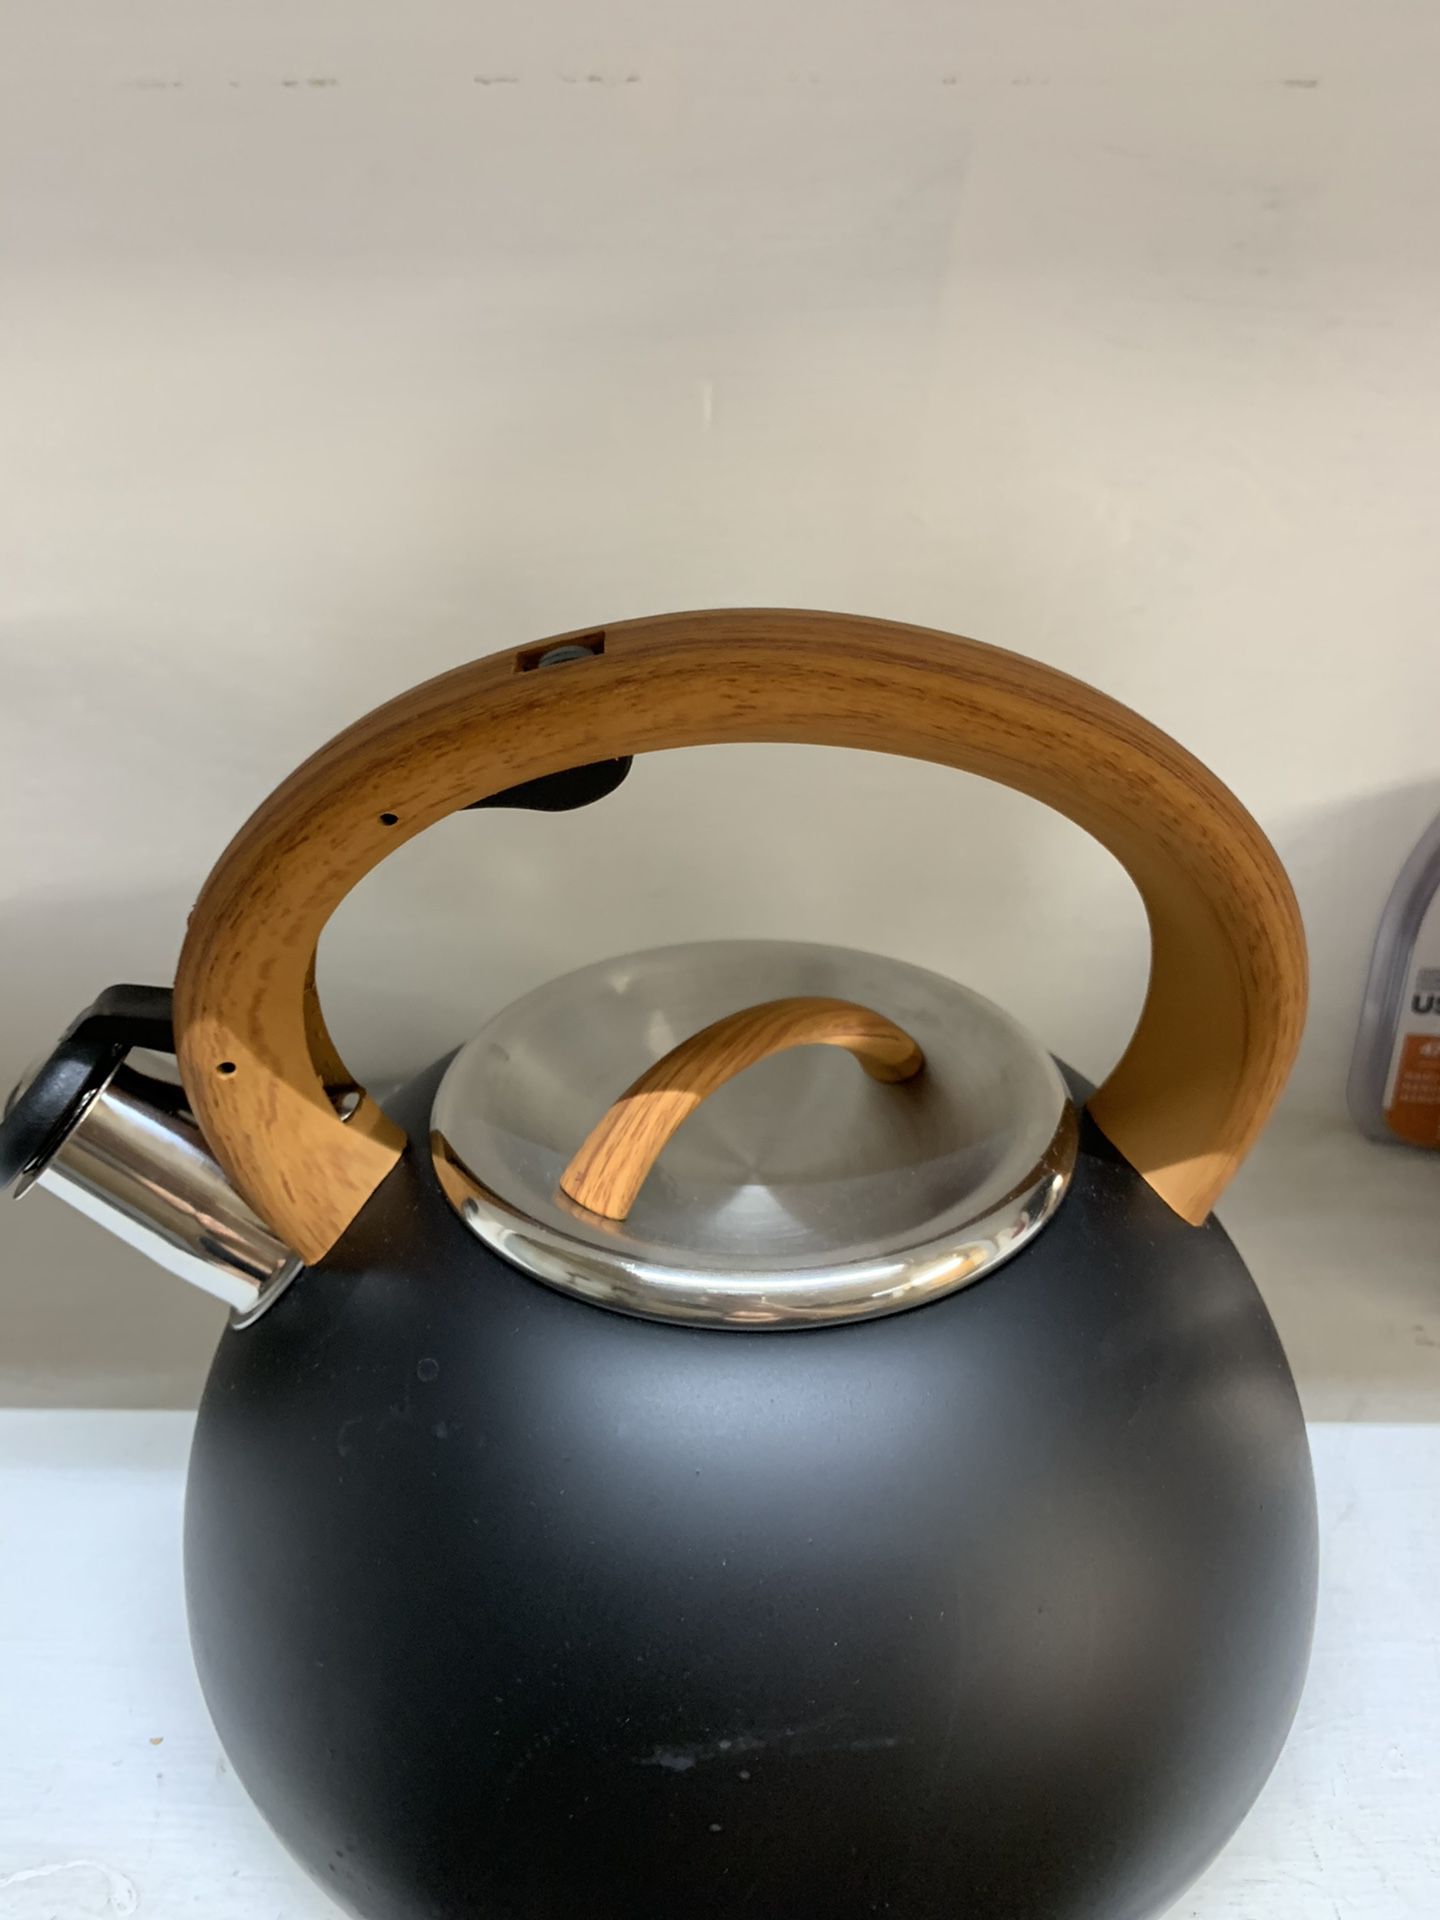 Época 2.5 Qt Tea kettle